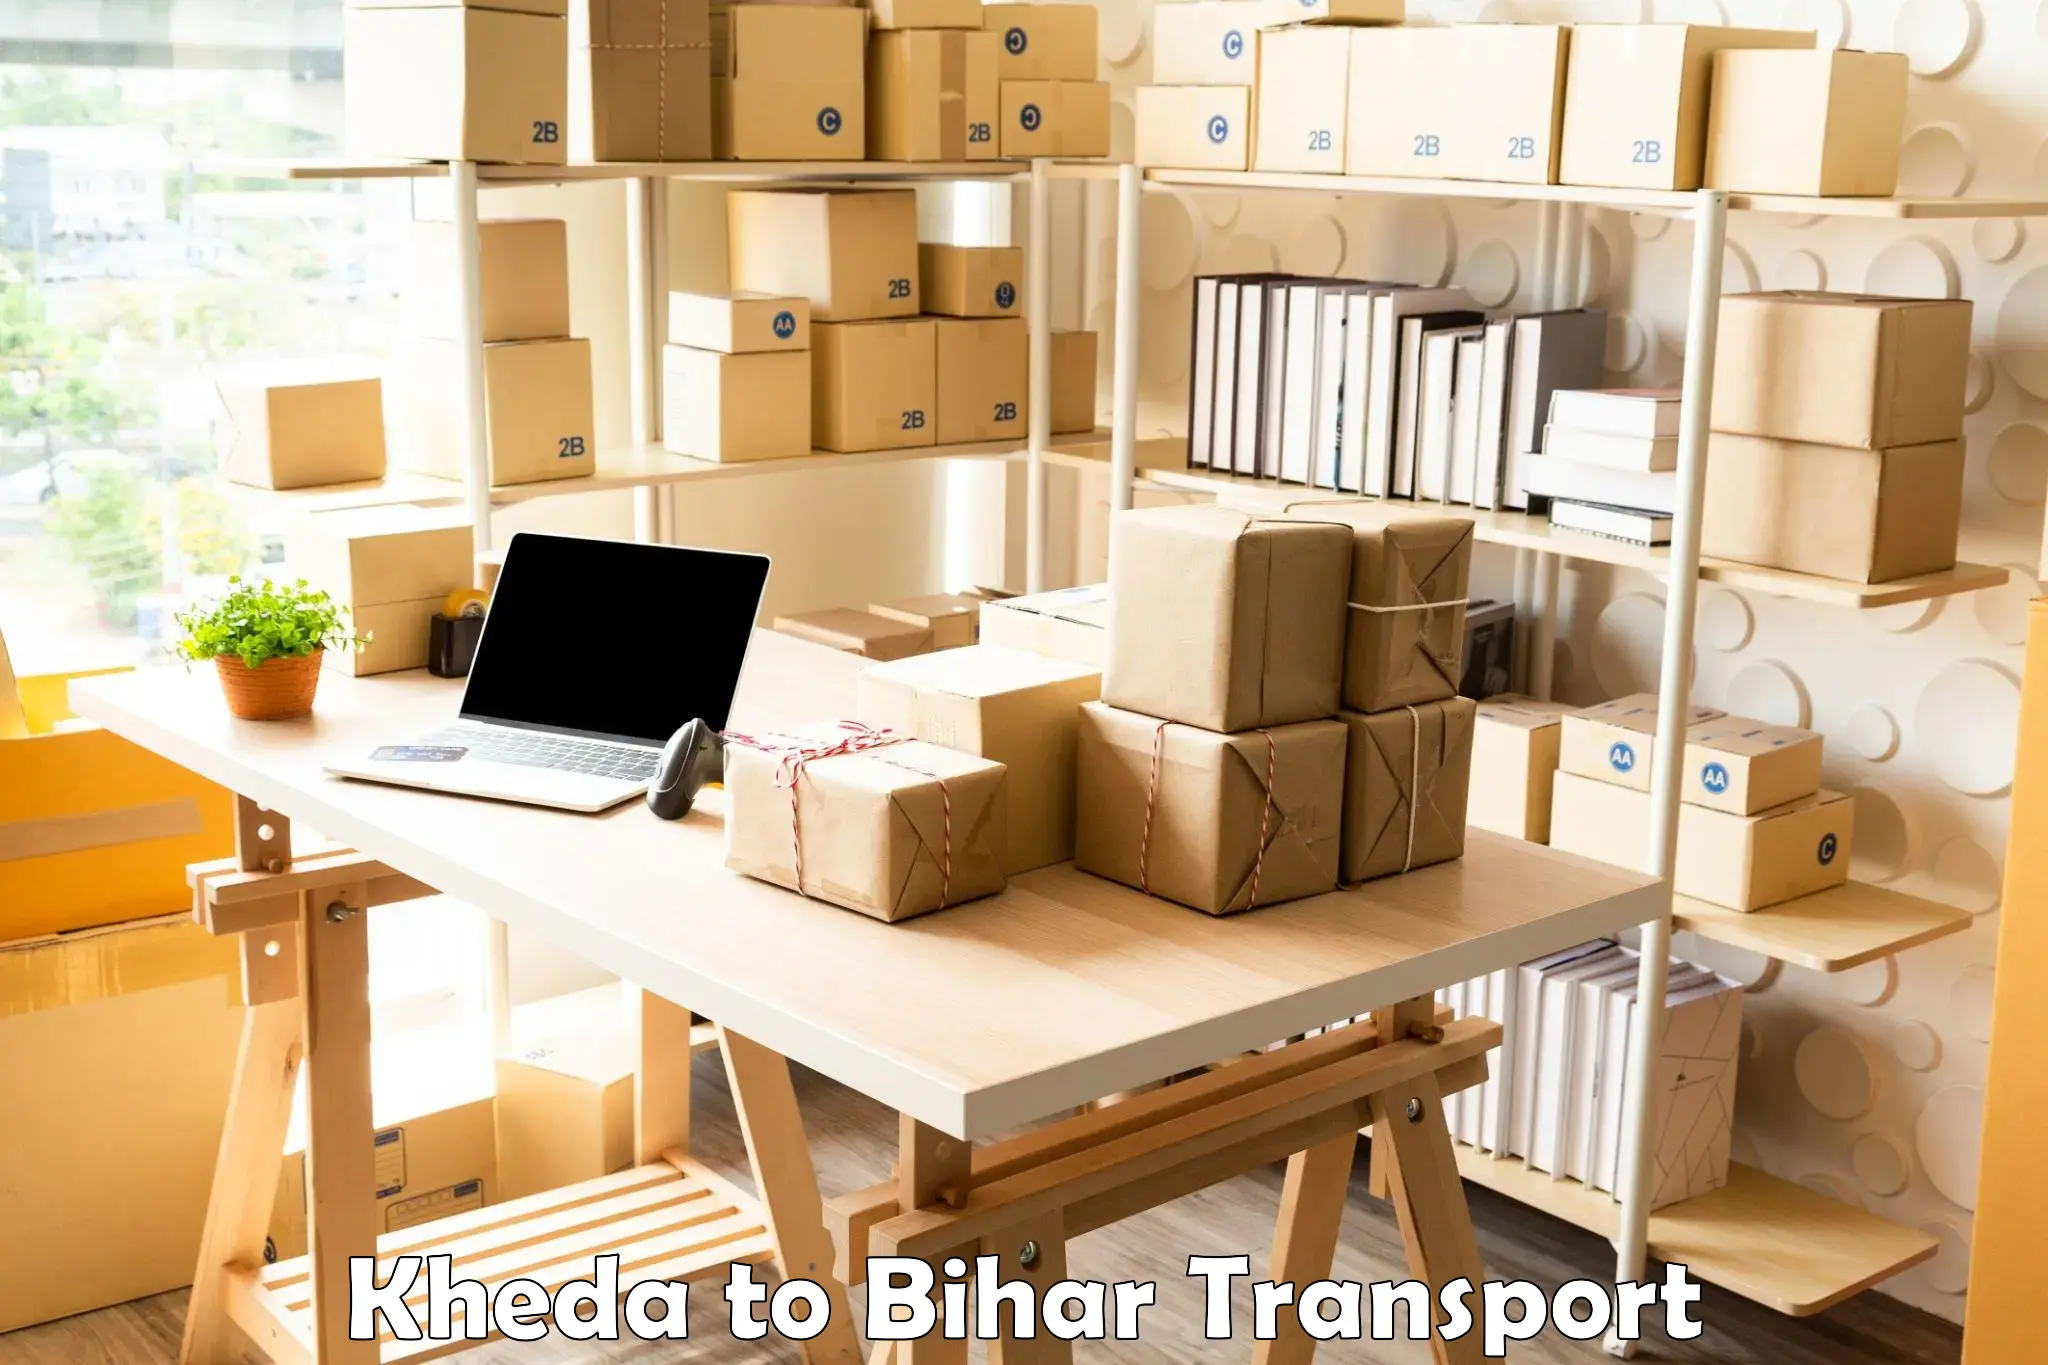 Commercial transport service Kheda to Khodaganj